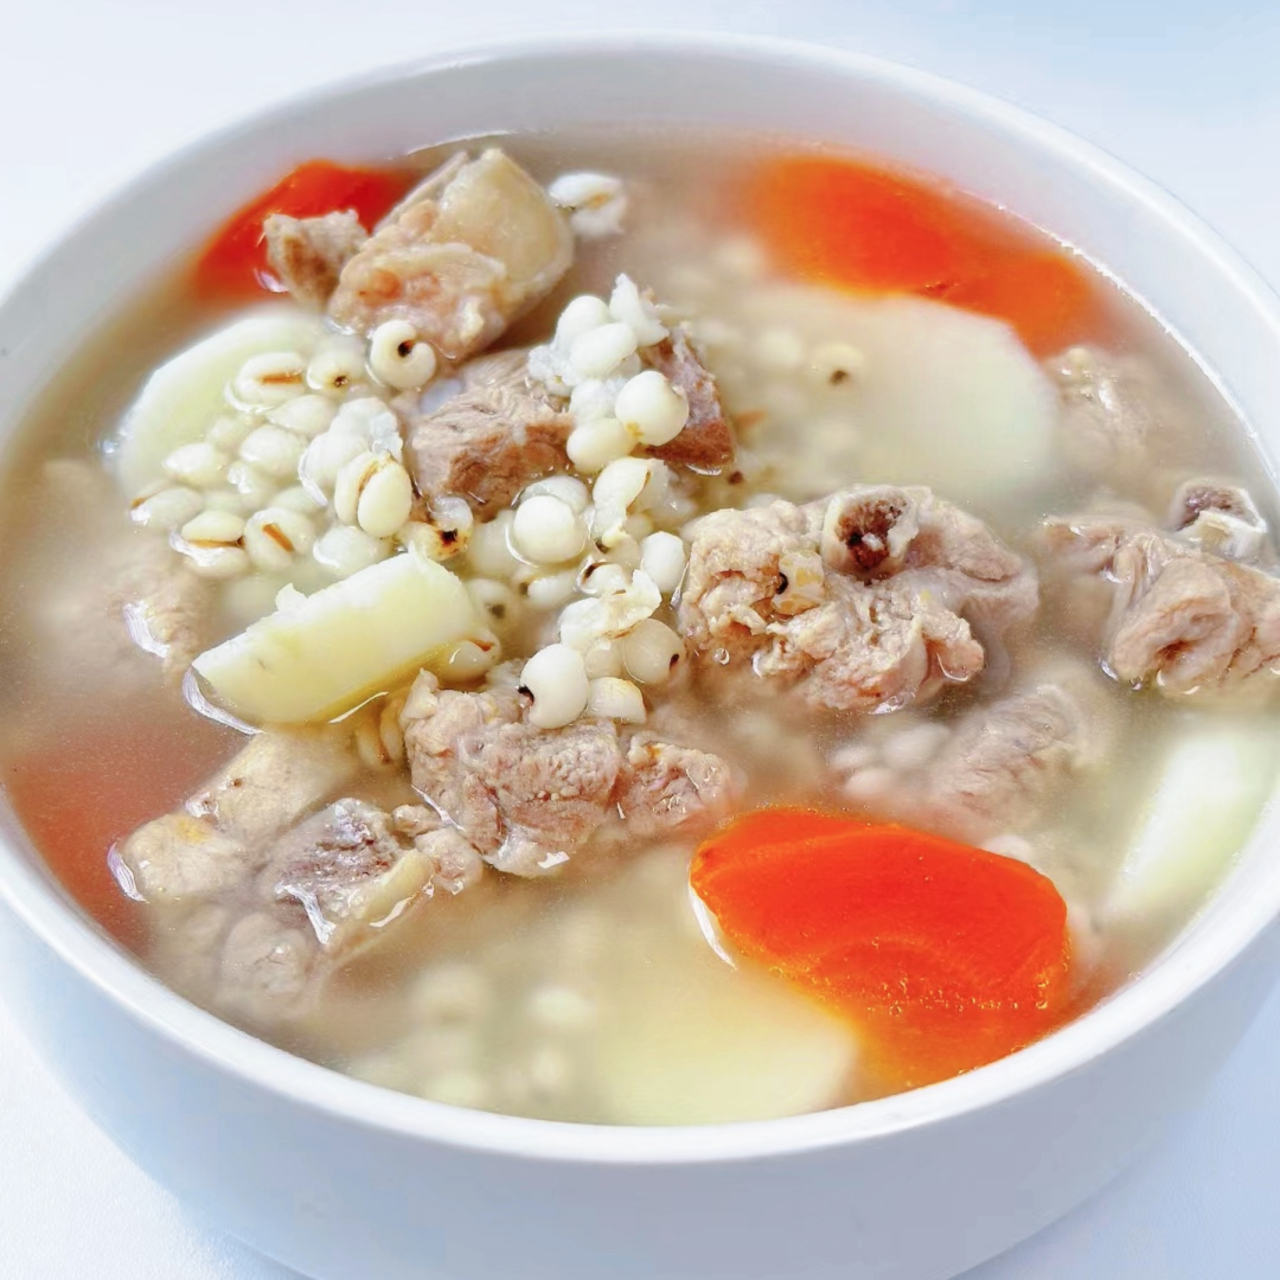 淮山薏米肉末汤图片